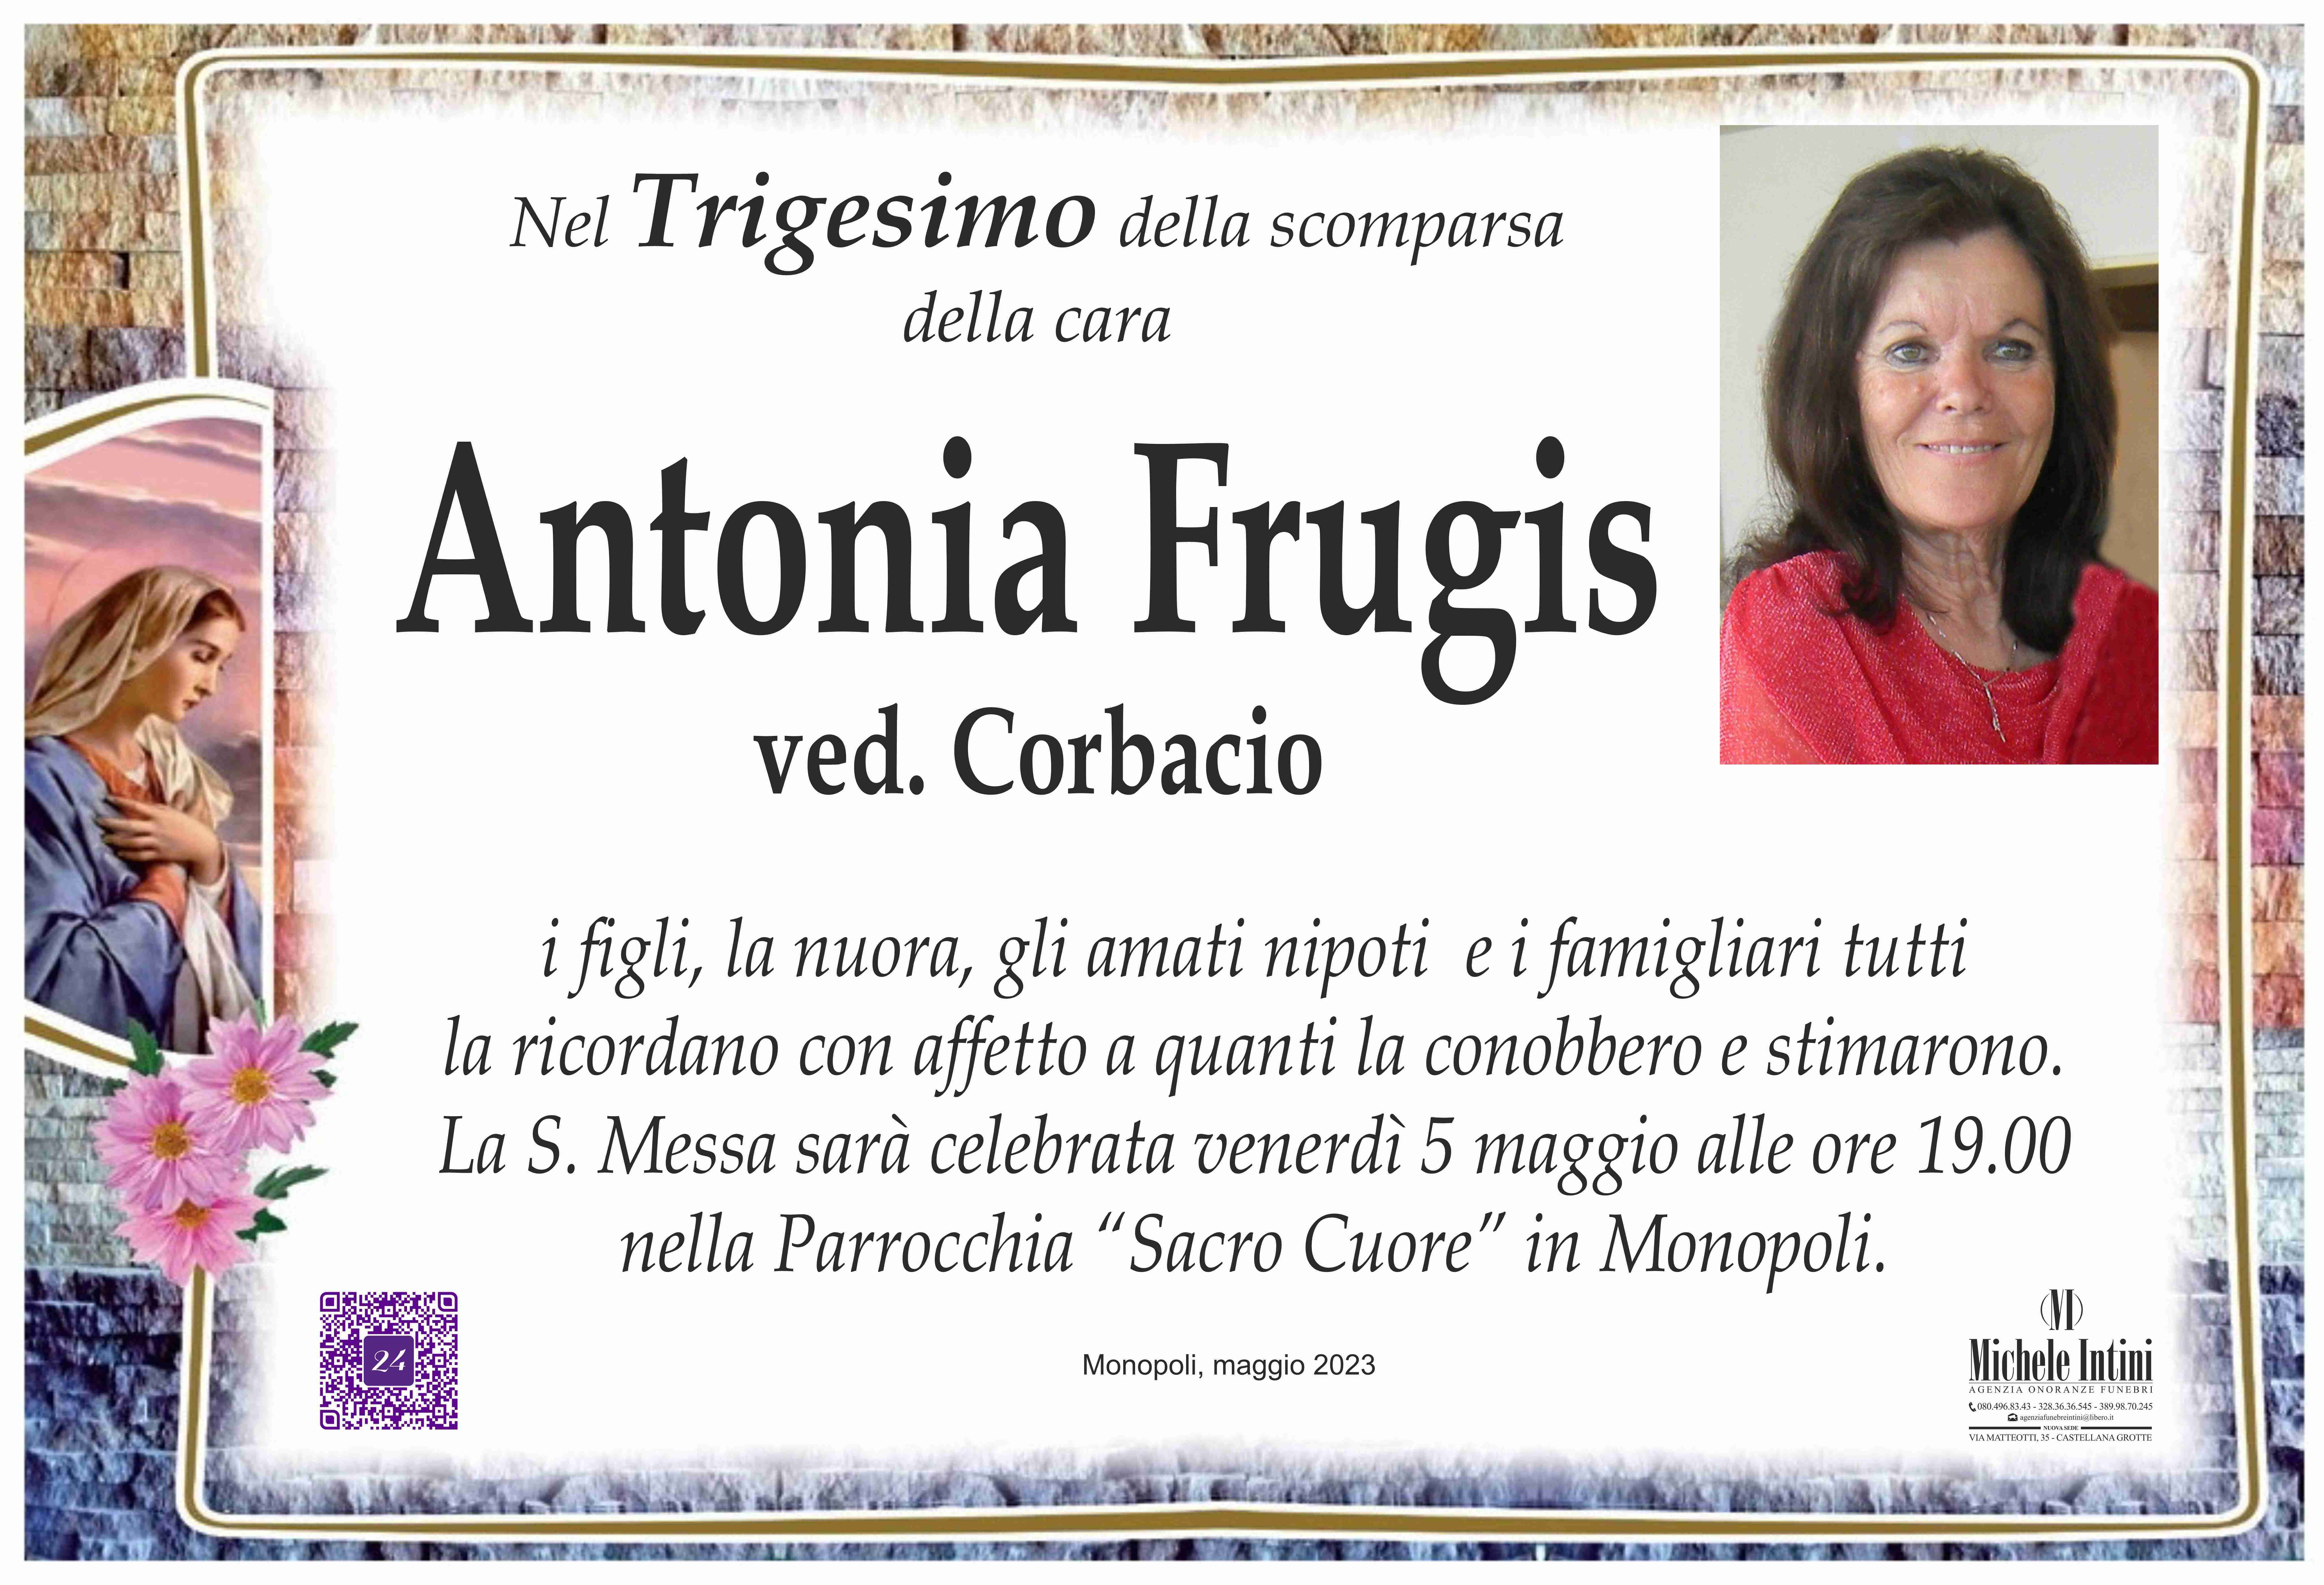 Antonia Frugis